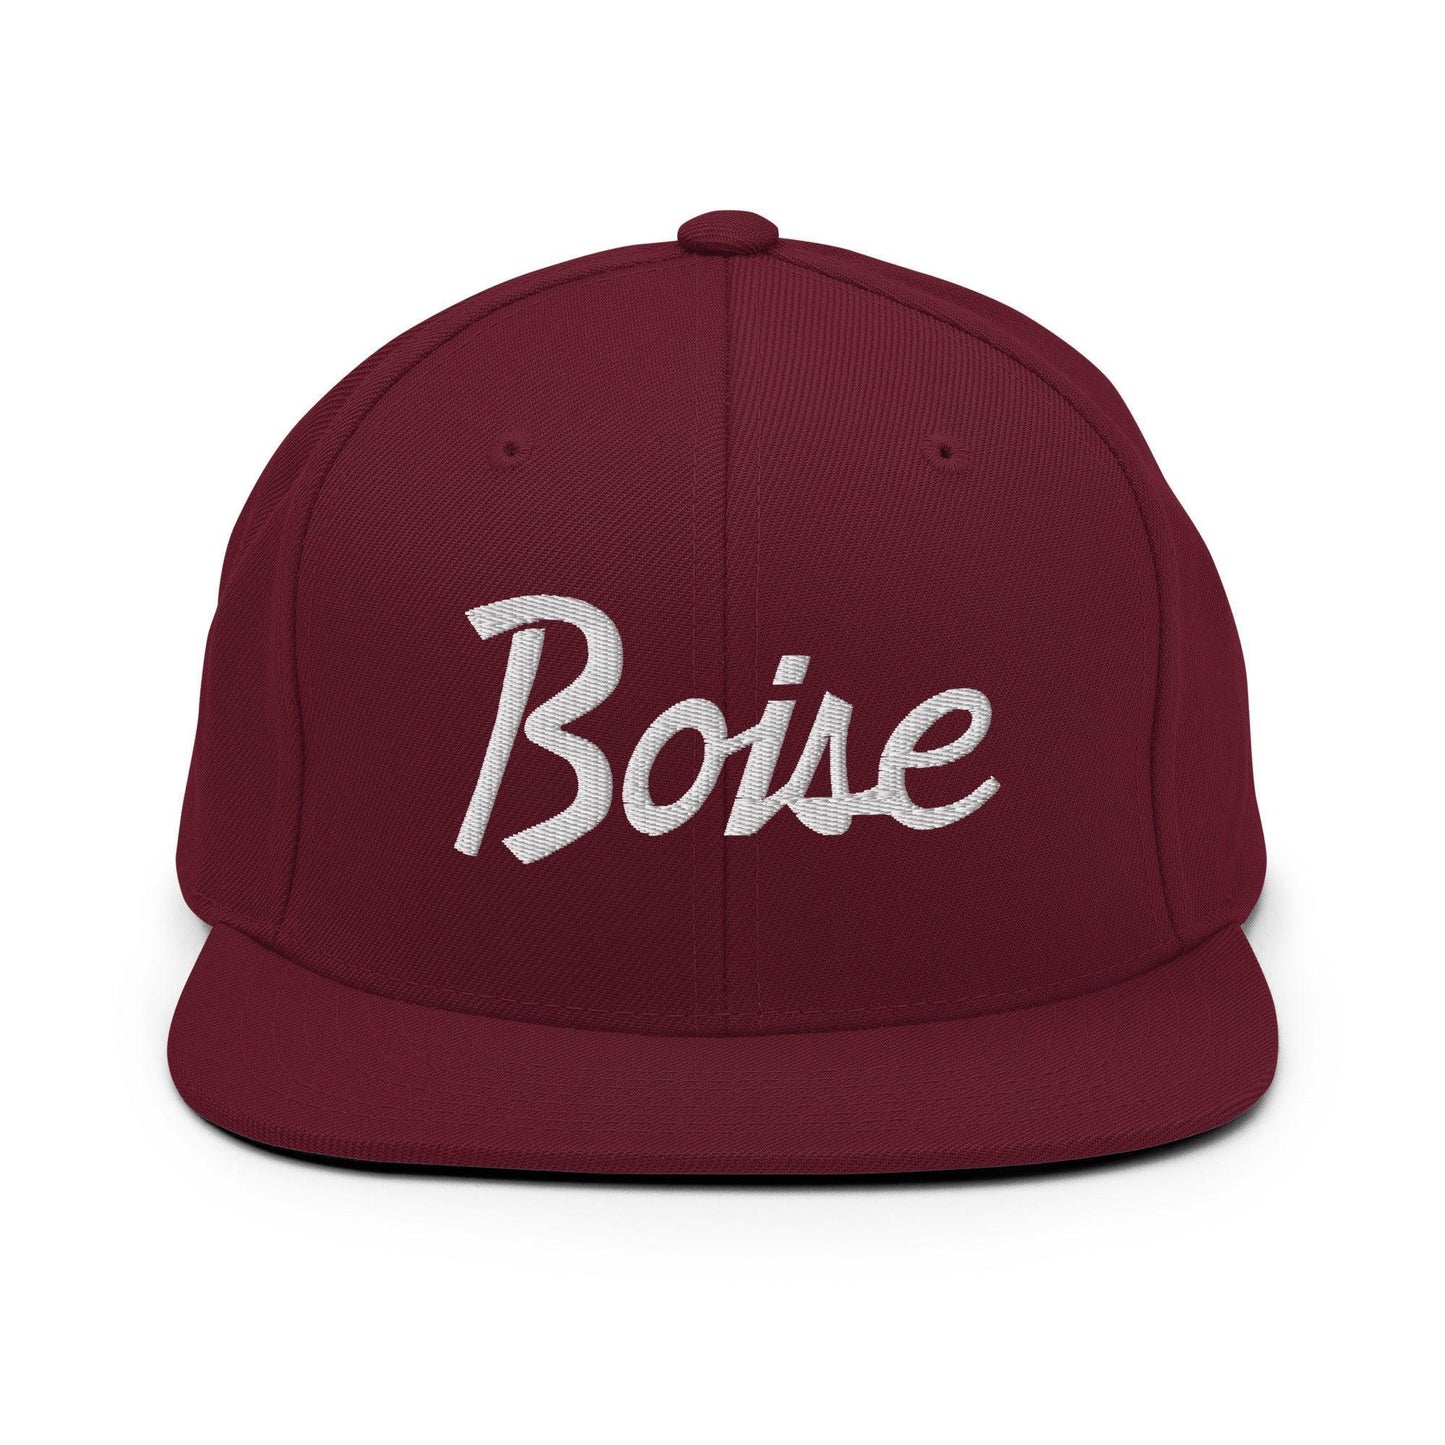 Boise Script Snapback Hat Maroon